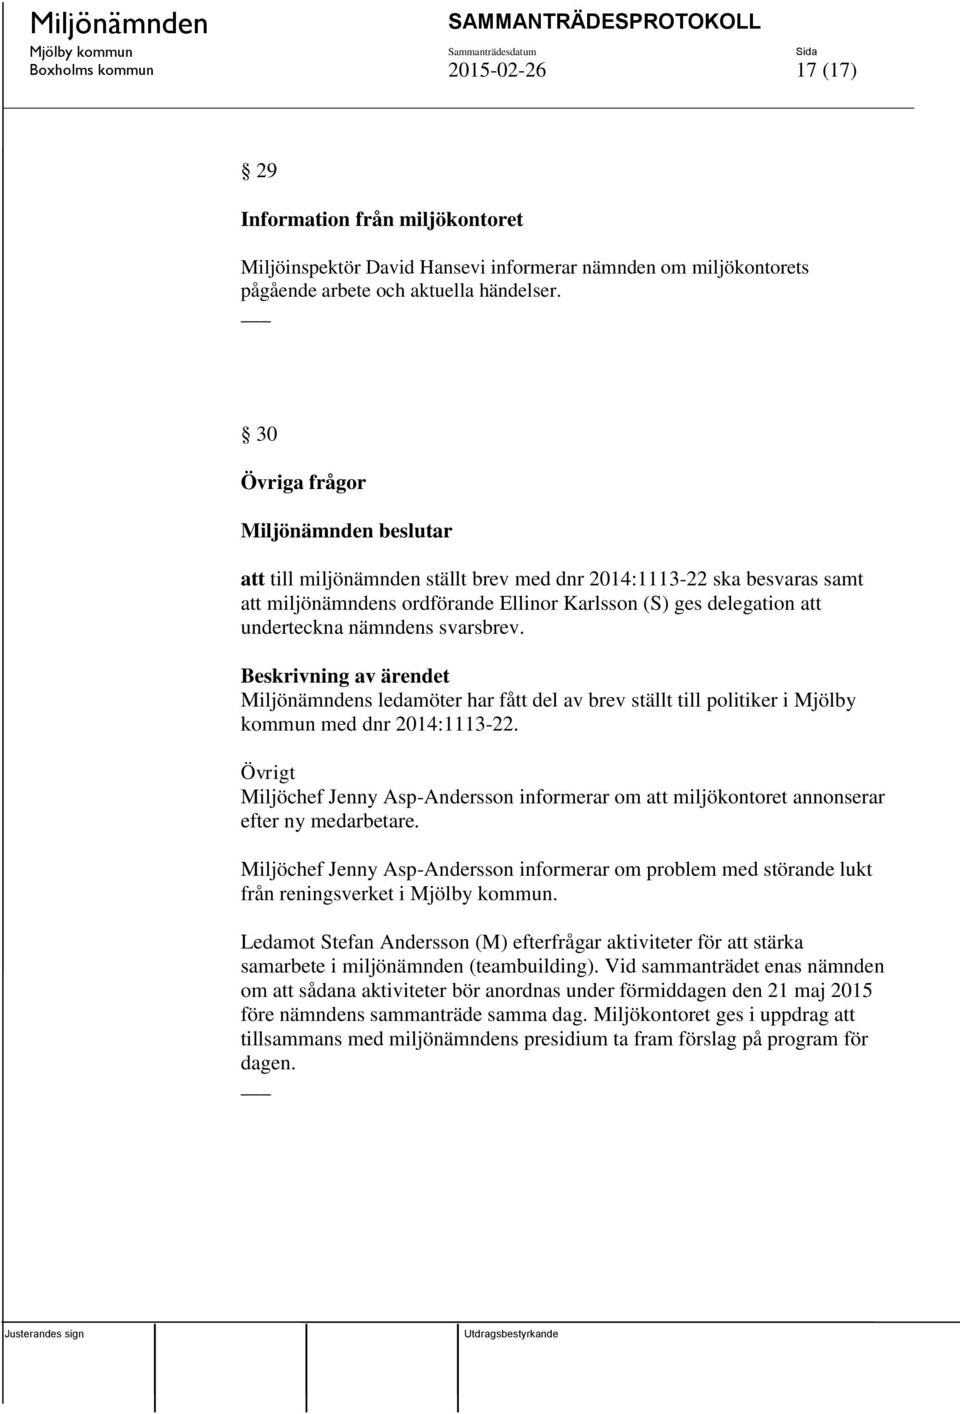 Miljönämndens ledamöter har fått del av brev ställt till politiker i Mjölby kommun med dnr 2014:1113-22.